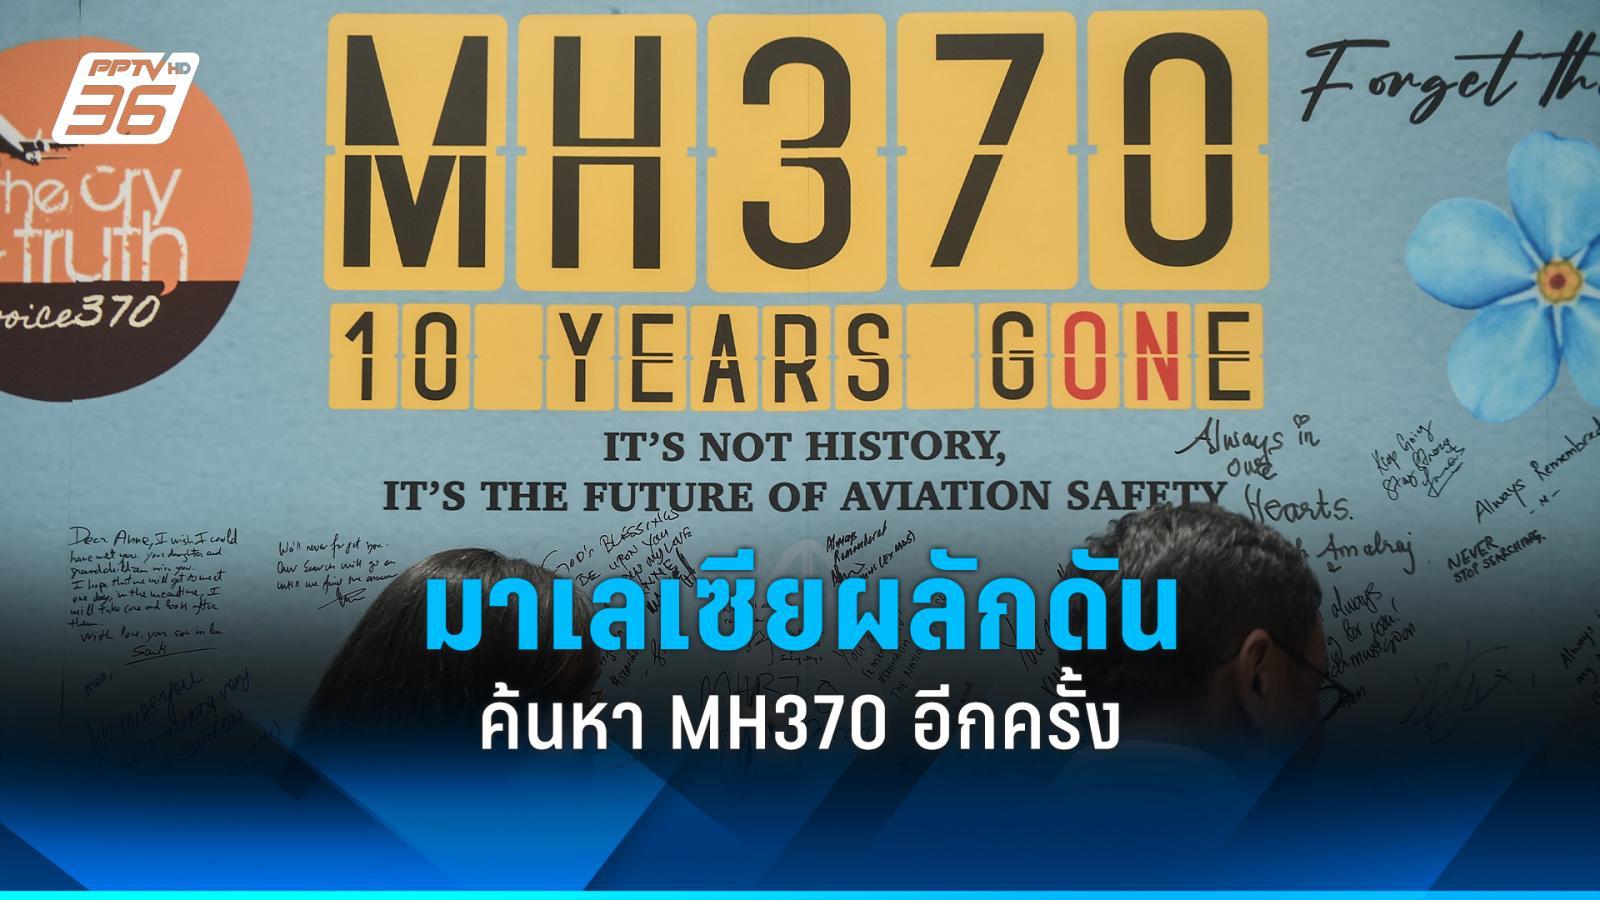 มาเลเซียชี้ค้นหา mh370 ต้องเดินหน้าต่อ หลังหายสาบสูญนาน 10 ปี